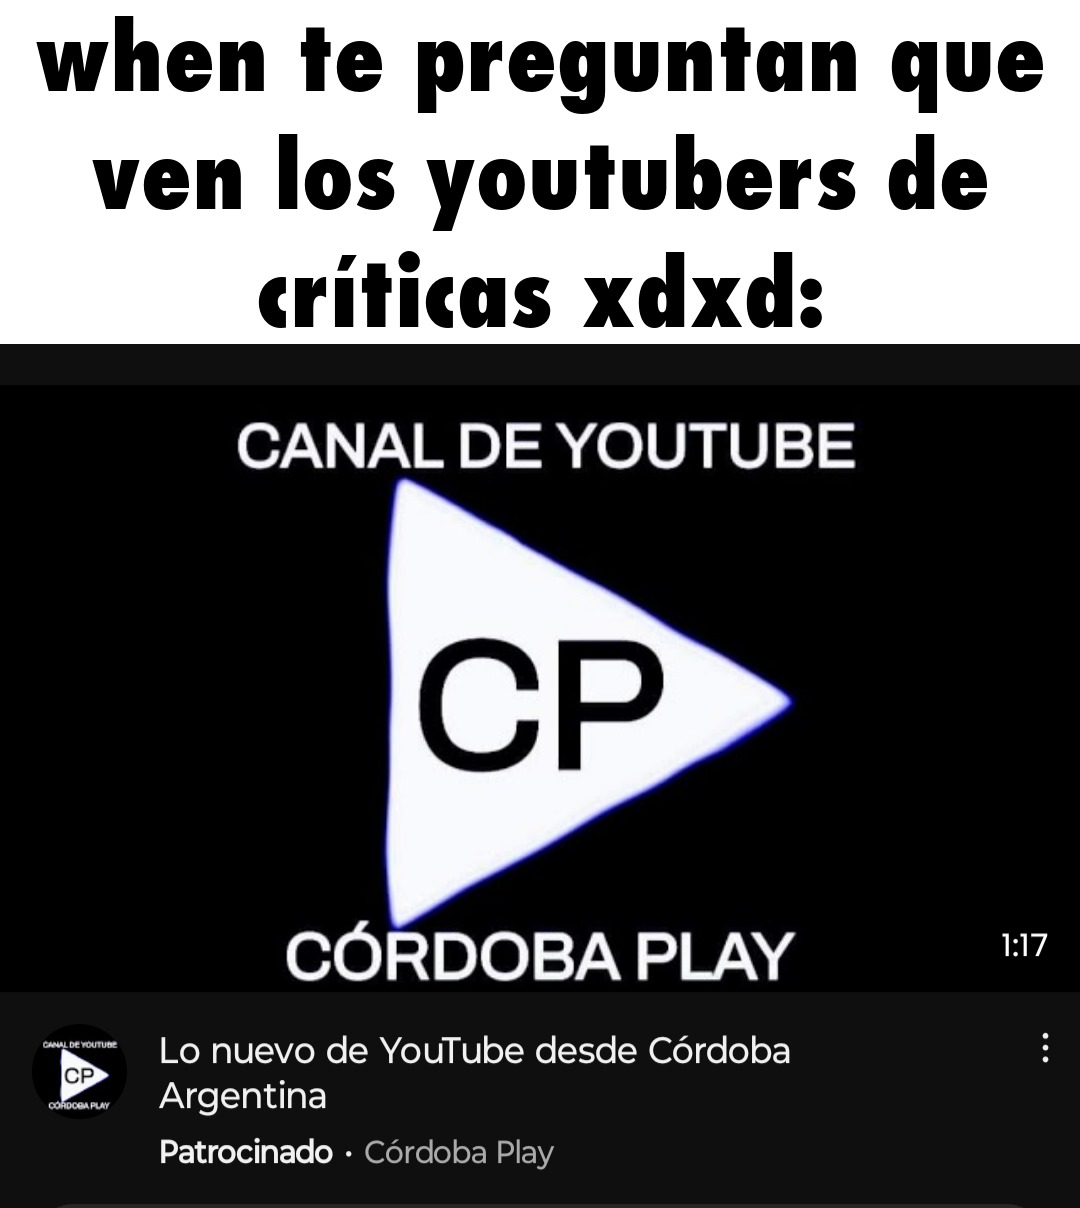 Córdoba play - meme